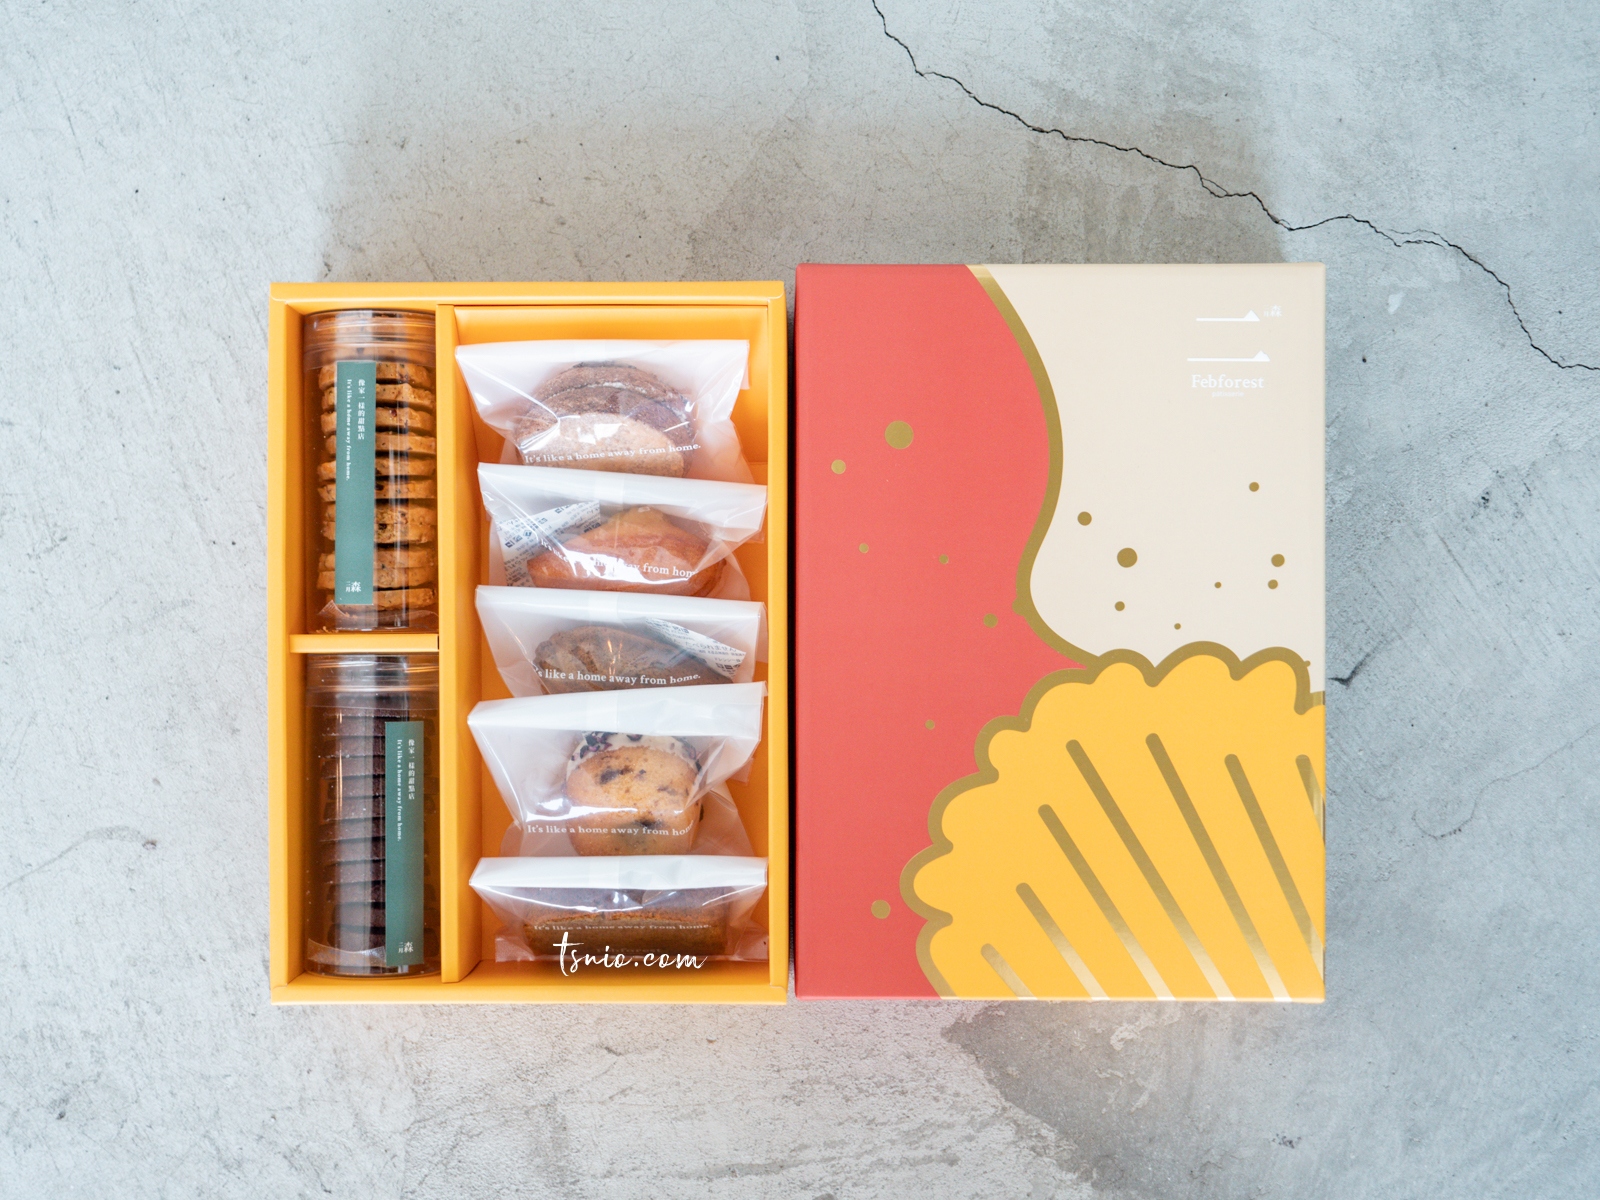 喜餅推薦 二月森甜點工作室 客製化手工喜餅 帶有台灣溫度的質感風味